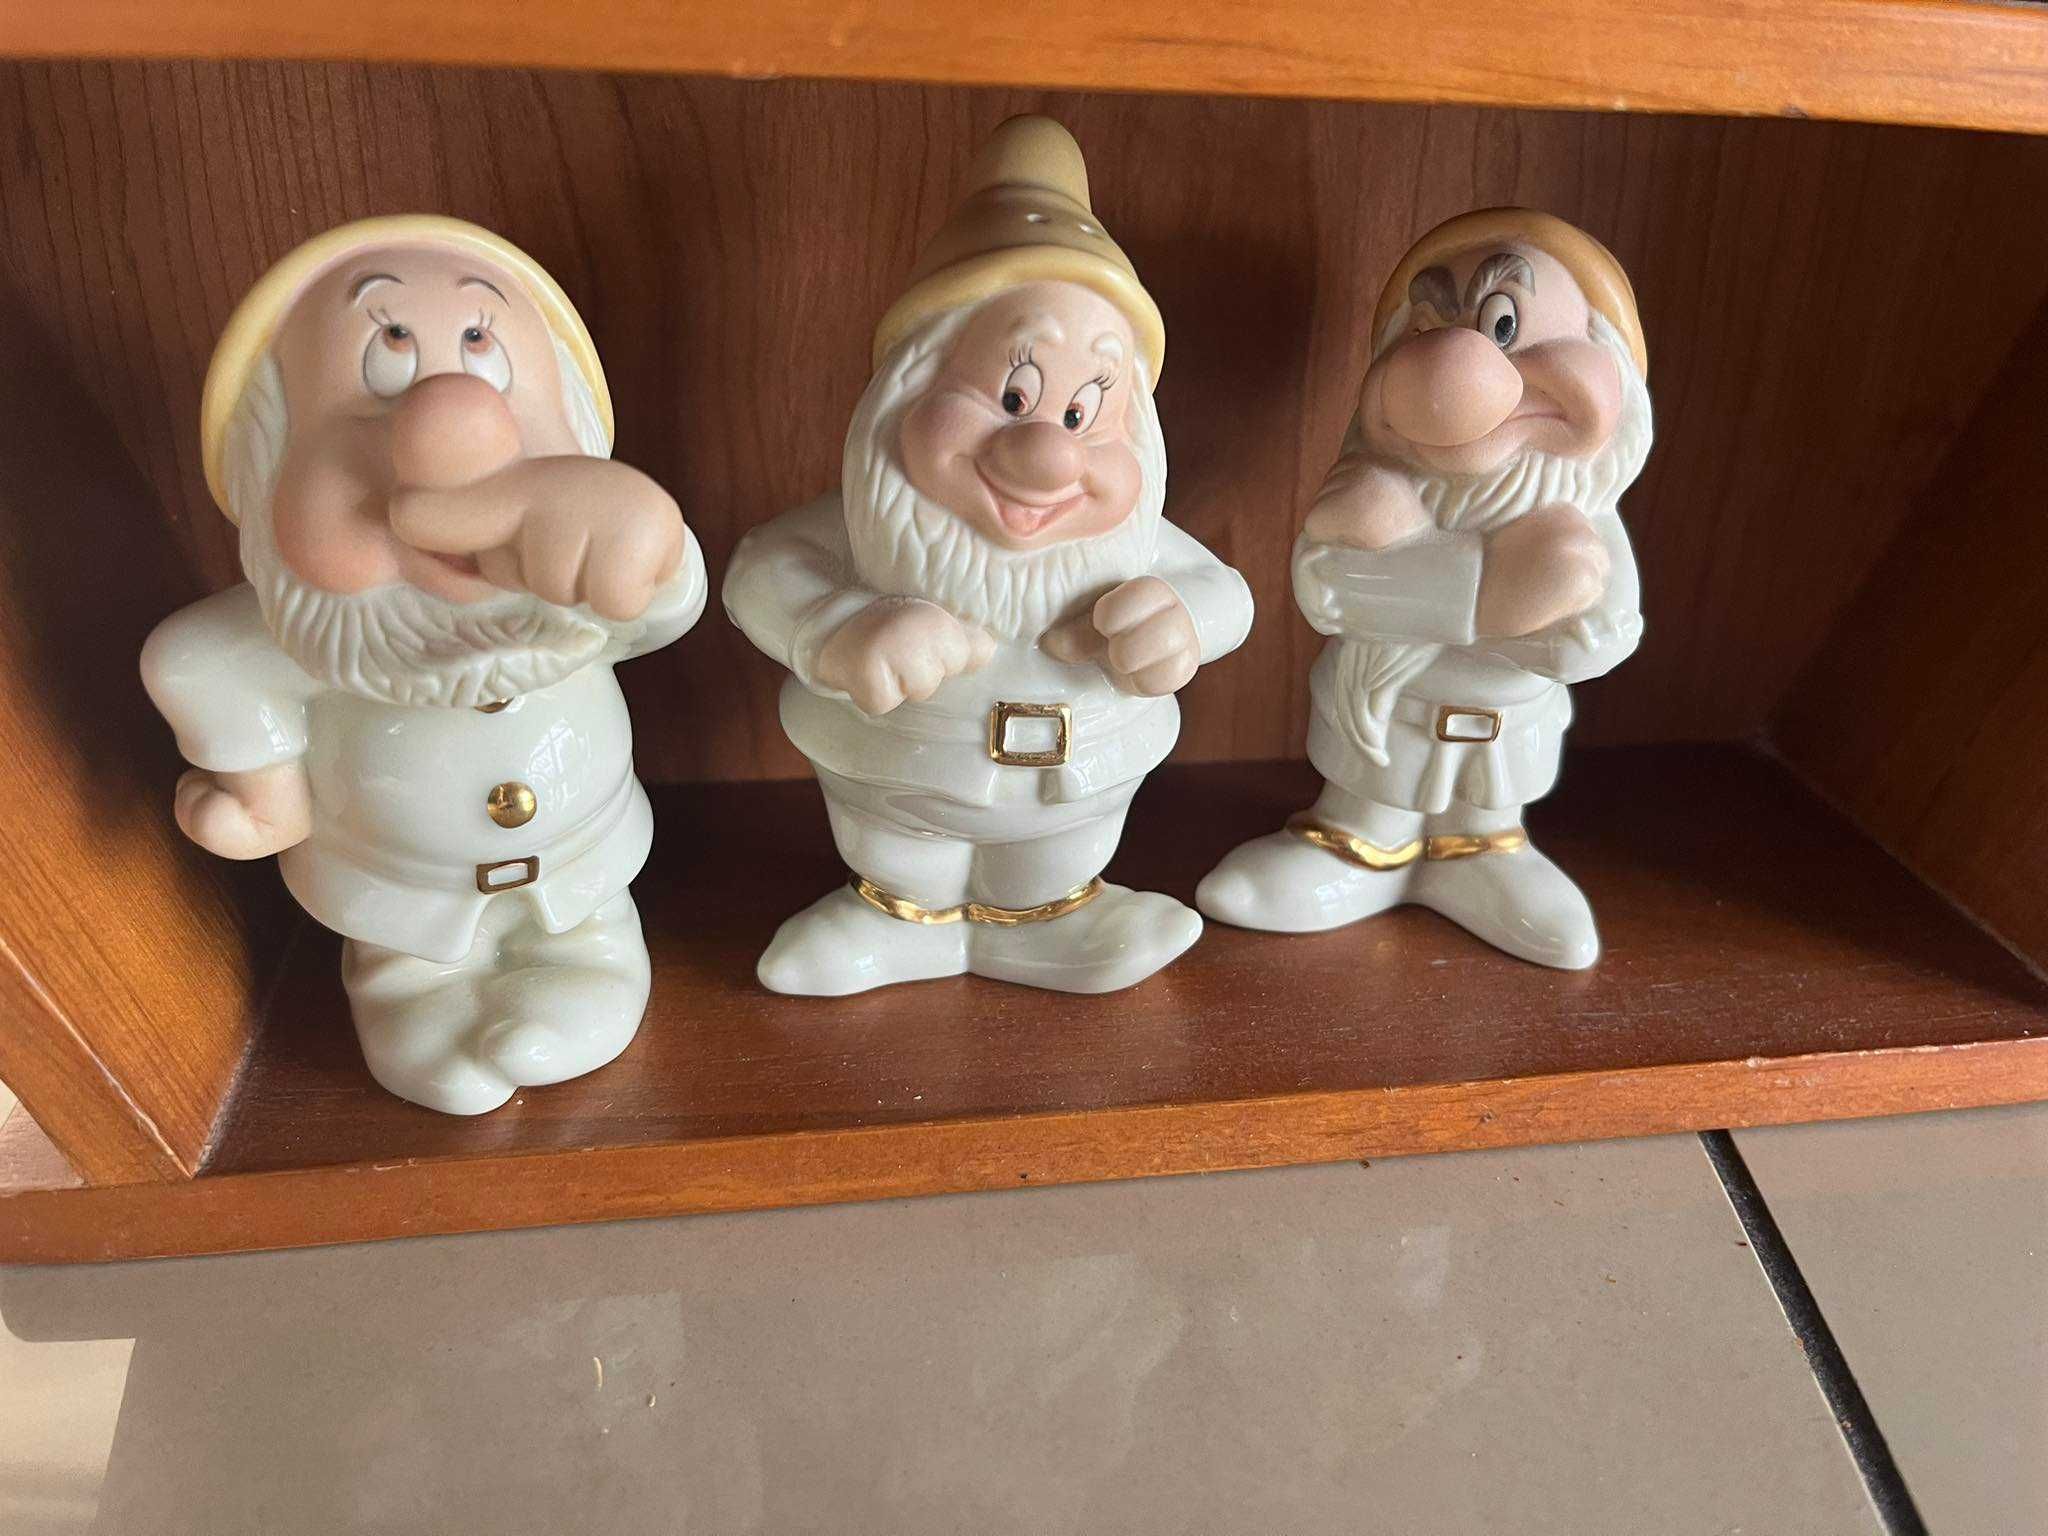 Królewna Śnieżka i 7 krasnoludków w chatce porcelana Disney Lenox